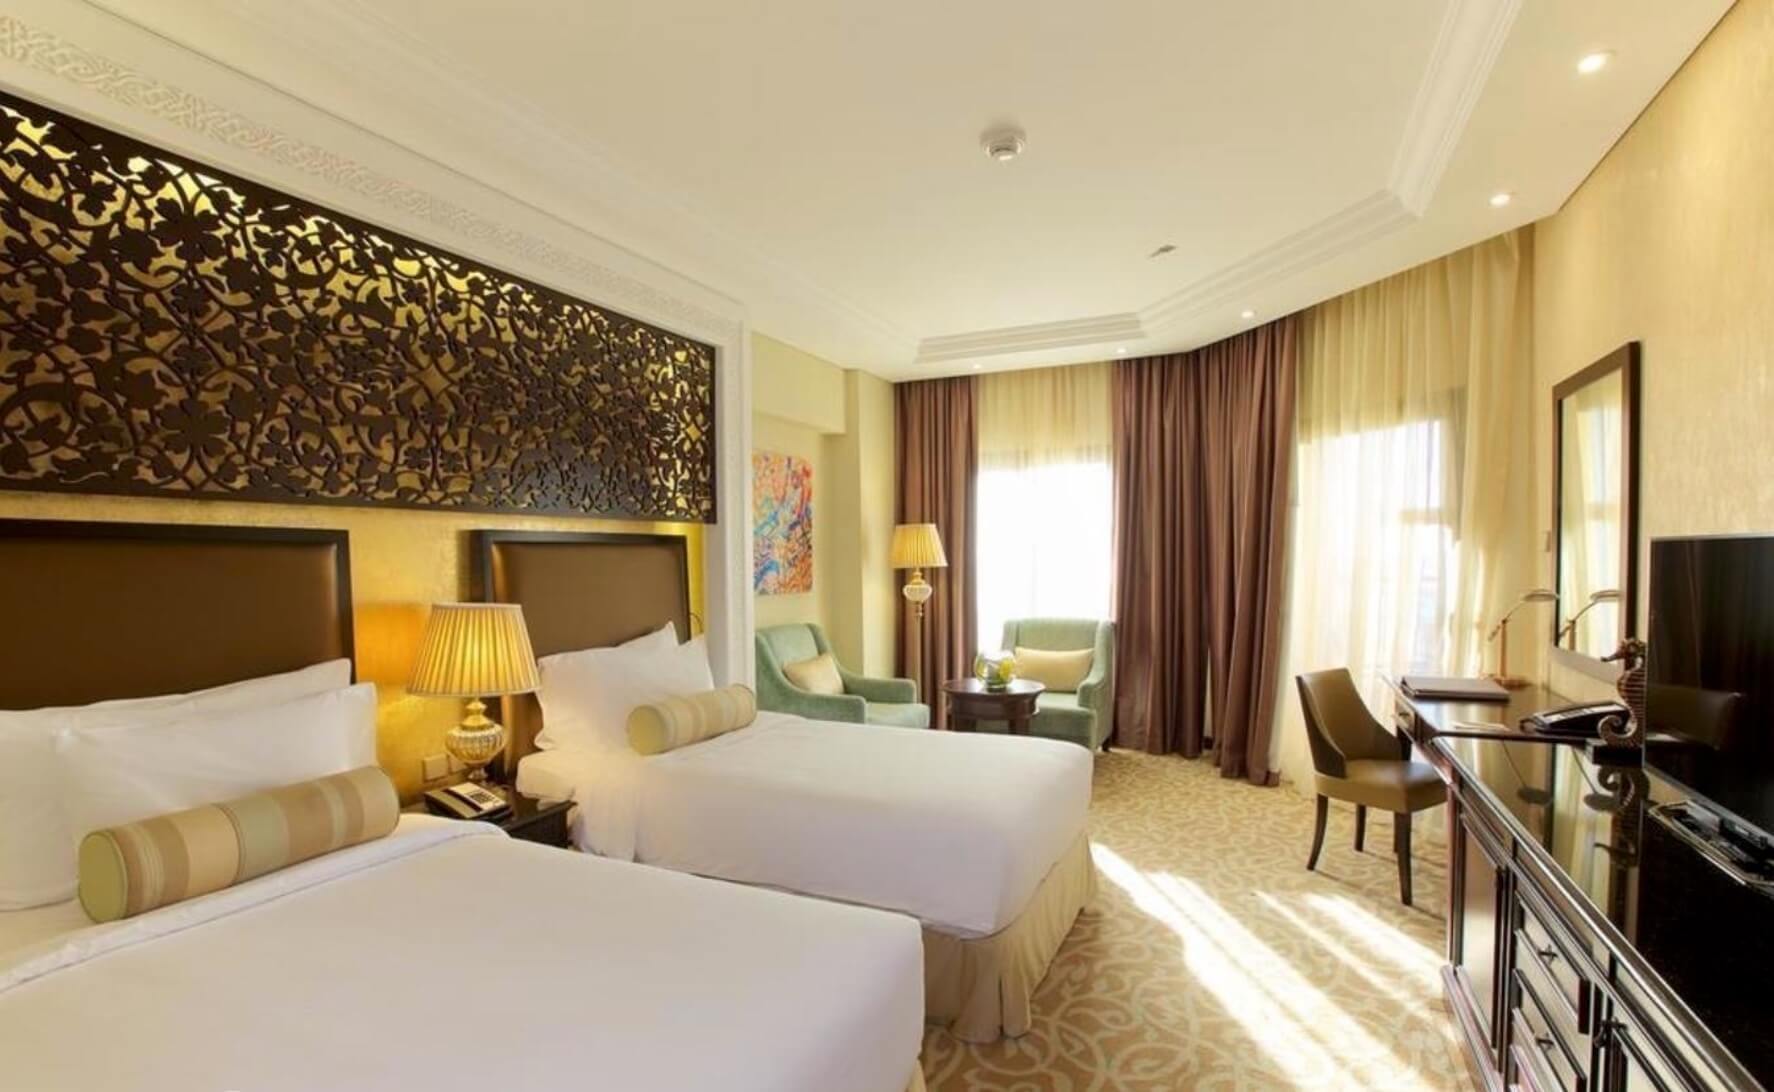 Тур в Рас-аль-Хайма на 7 ночей в отель Marjan Island Resort & Spa (ОАЭ) с 11.03.18 от 76 997 рублей (BB) на двоих